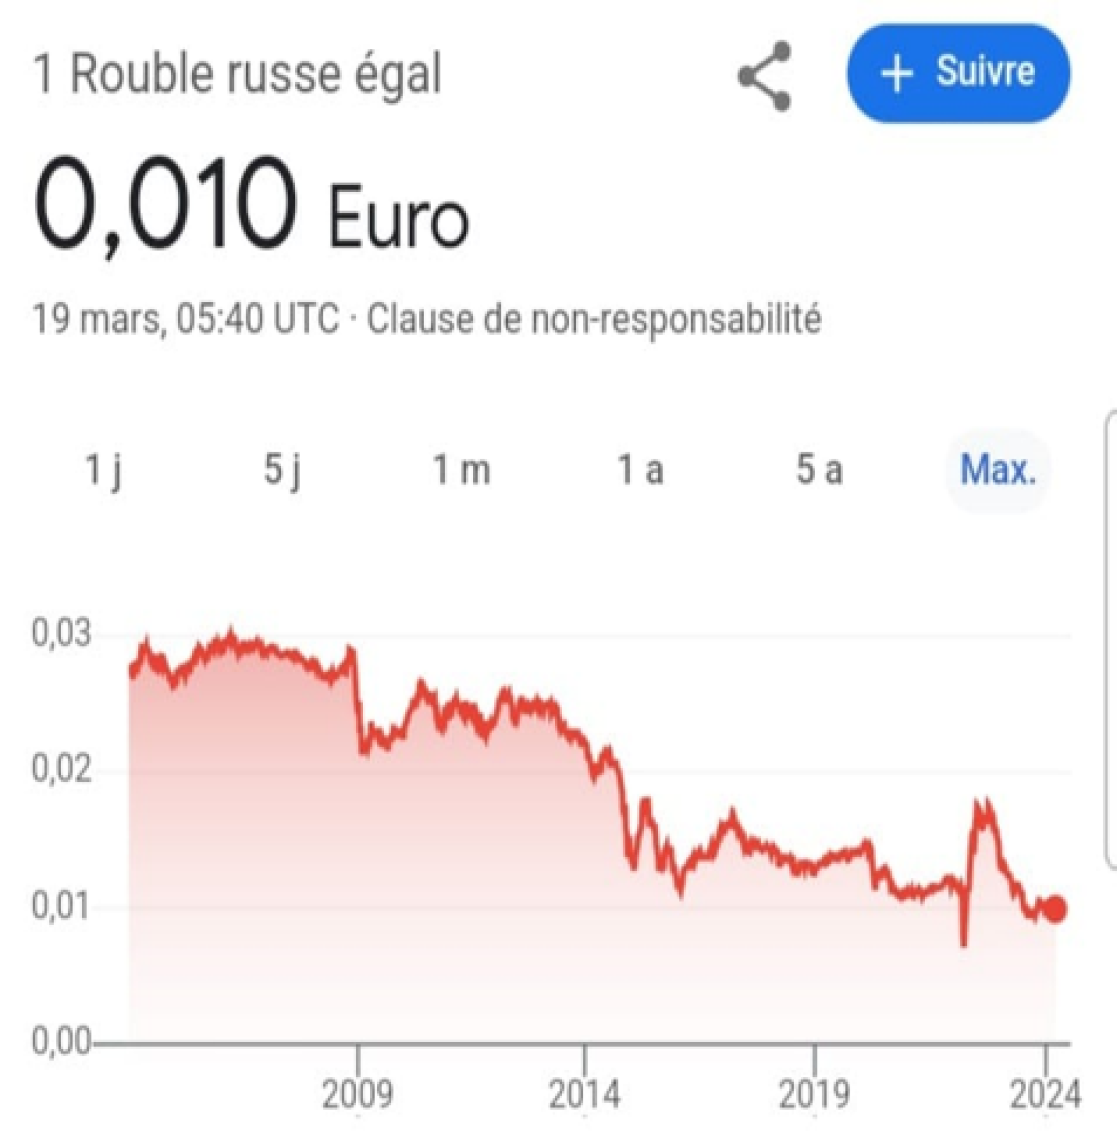 Russia's ruble